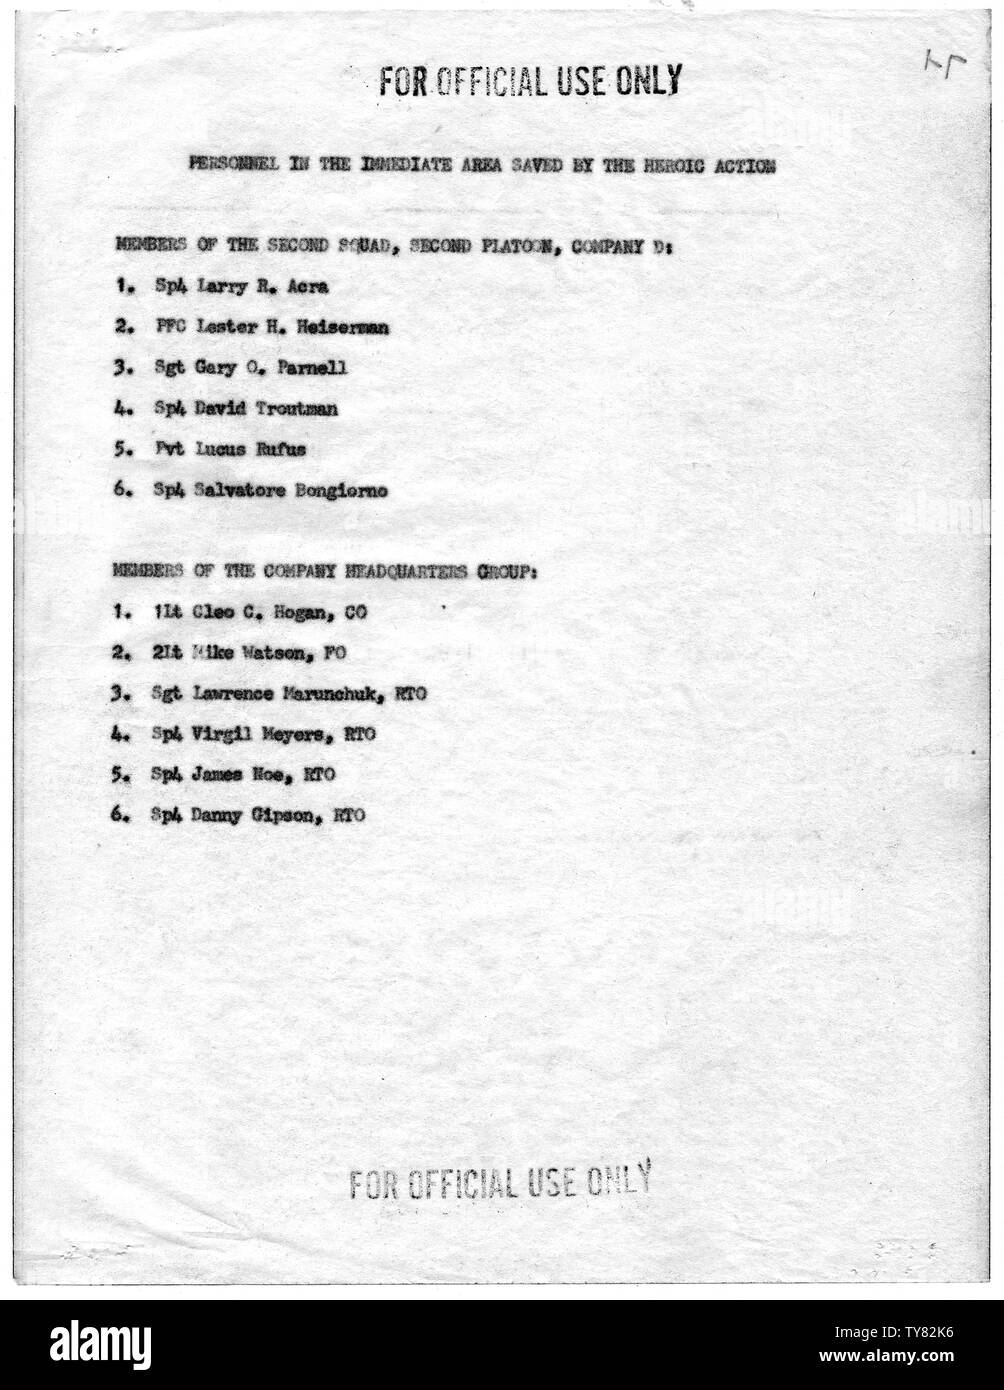 Lista de personal en el área inmediata guardados por la acción heroica de Clifford C. Sims, Sargento, la empresa D, segundo batallón de infantería aerotransportado), 501ª, 101ª División Aerotransportada, en la batalla de Hue; alcance y contenido: Esta lista identifica a las personas cuyas vidas fueron salvadas por las acciones de sargento Clifford C. Sims, quien se distinguió el 21 de febrero de 1968 en la batalla de Hue, República de Vietnam. Como resultado de esta lista, y las declaraciones hechas por otros en el Sargento Sims unidad, fue otorgado póstumamente la Medalla de Honor del Congreso. En un extraordinario incidencias Foto de stock